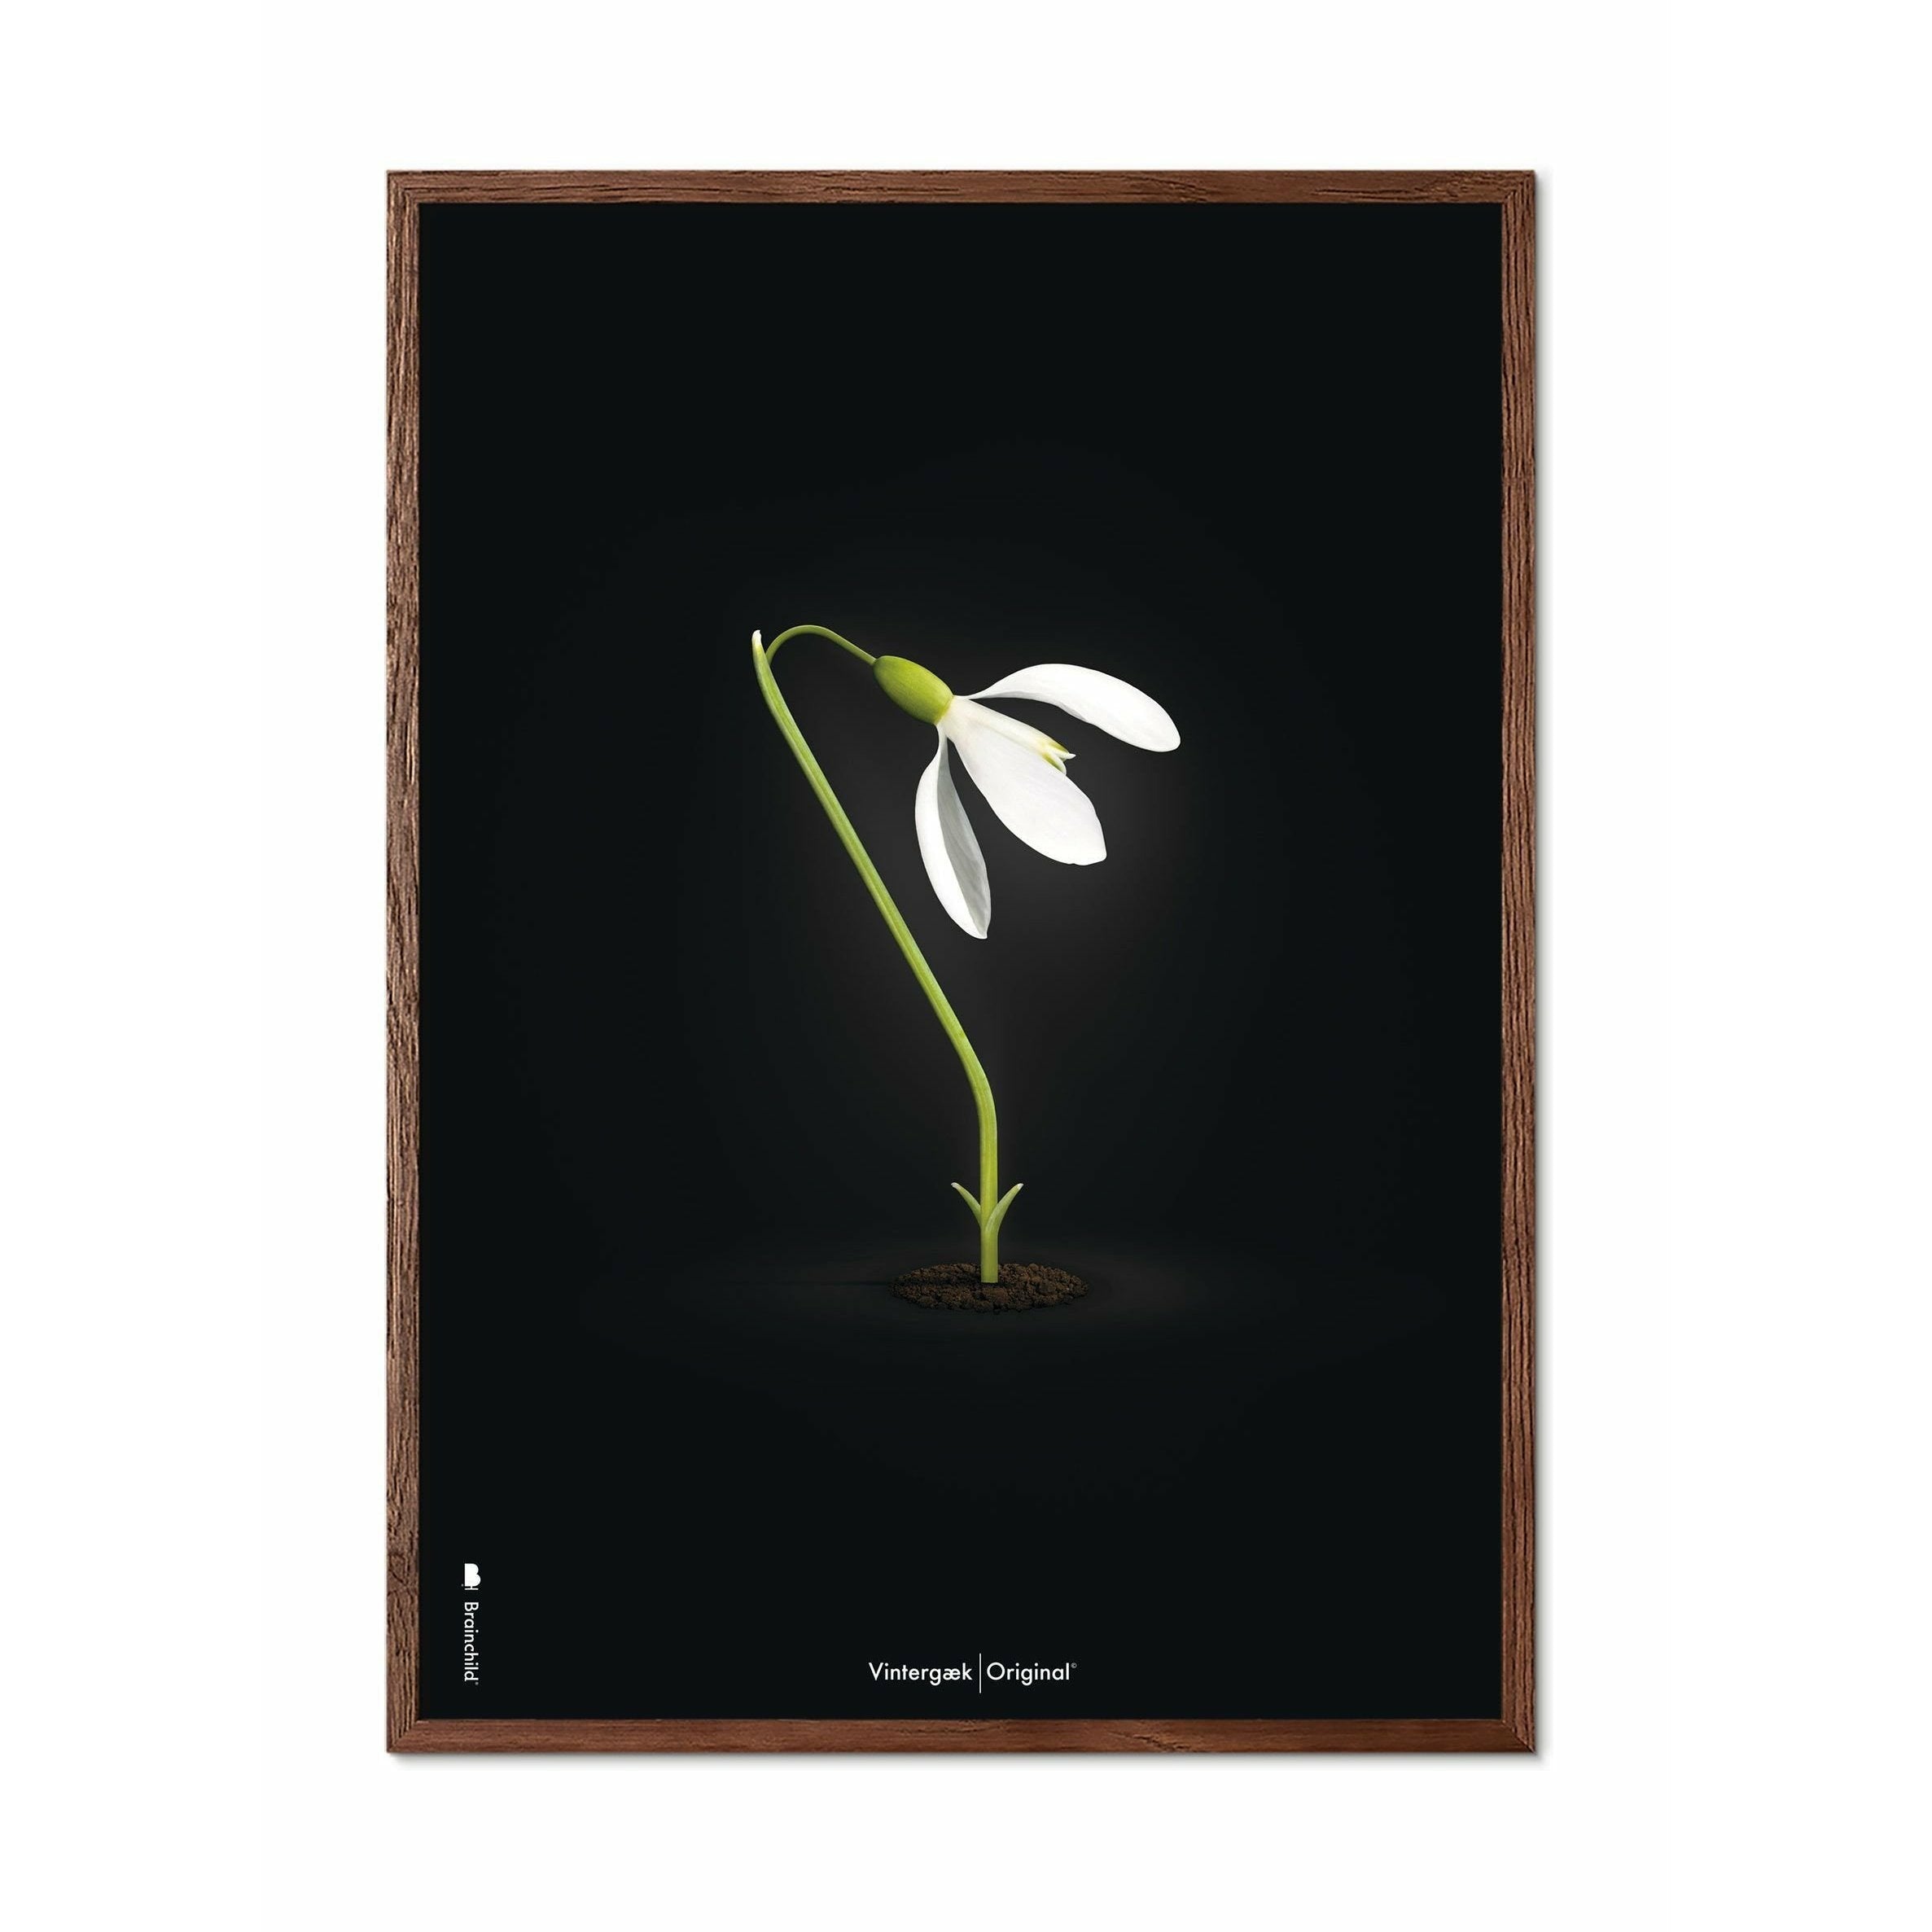 Brainchild Snowdrop Classic plakát, rám vyrobený z tmavého dřeva 70x100 cm, černé pozadí